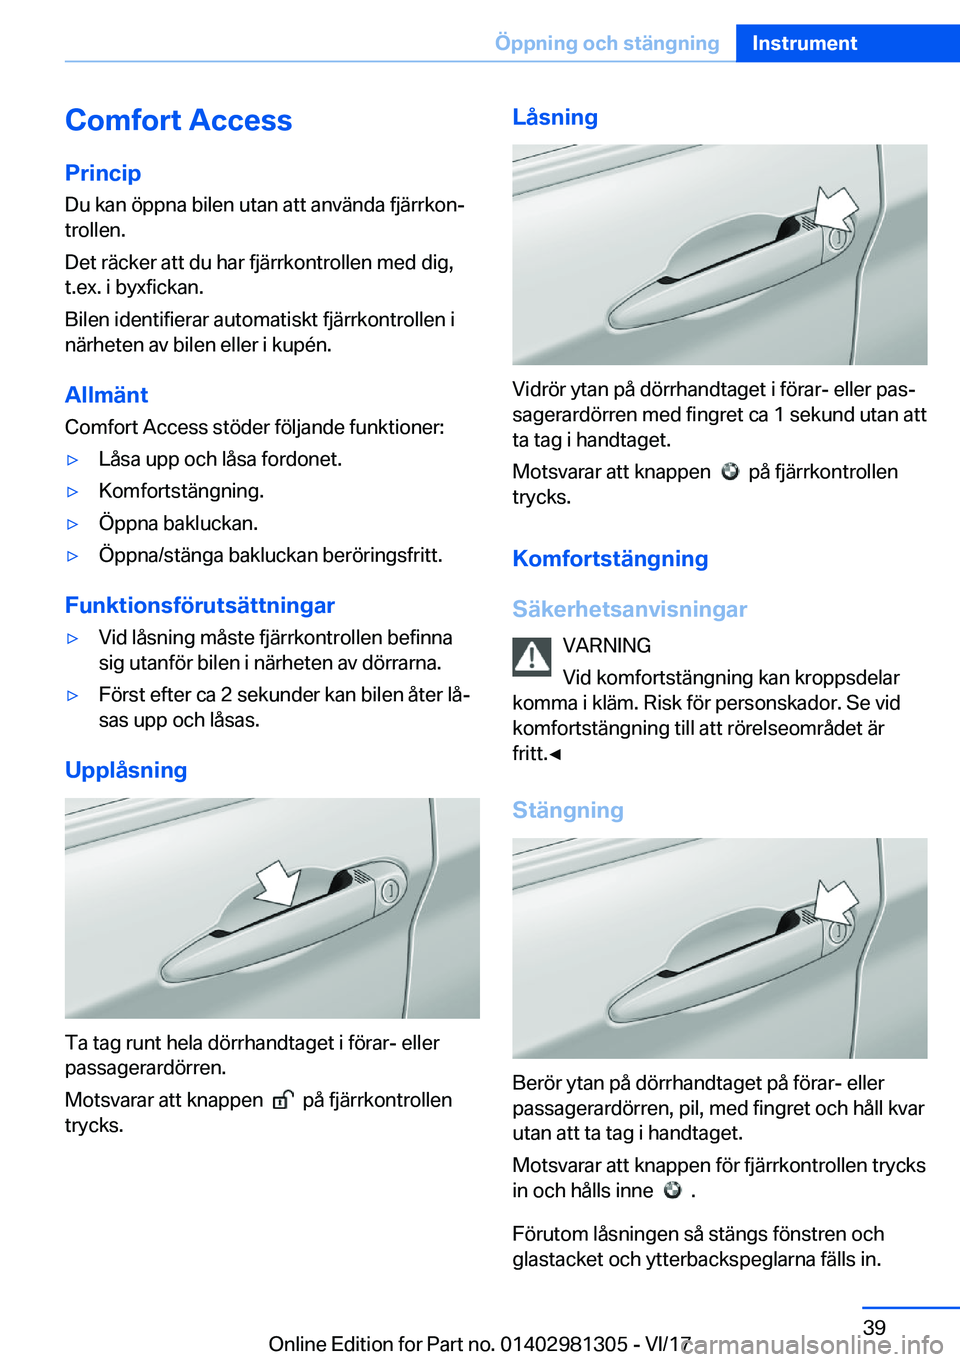 BMW X4 2018  InstruktionsbÖcker (in Swedish) �C�o�m�f�o�r�t��A�c�c�e�s�s�P�r�i�n�c�i�p
�D�u� �k�a�n� �